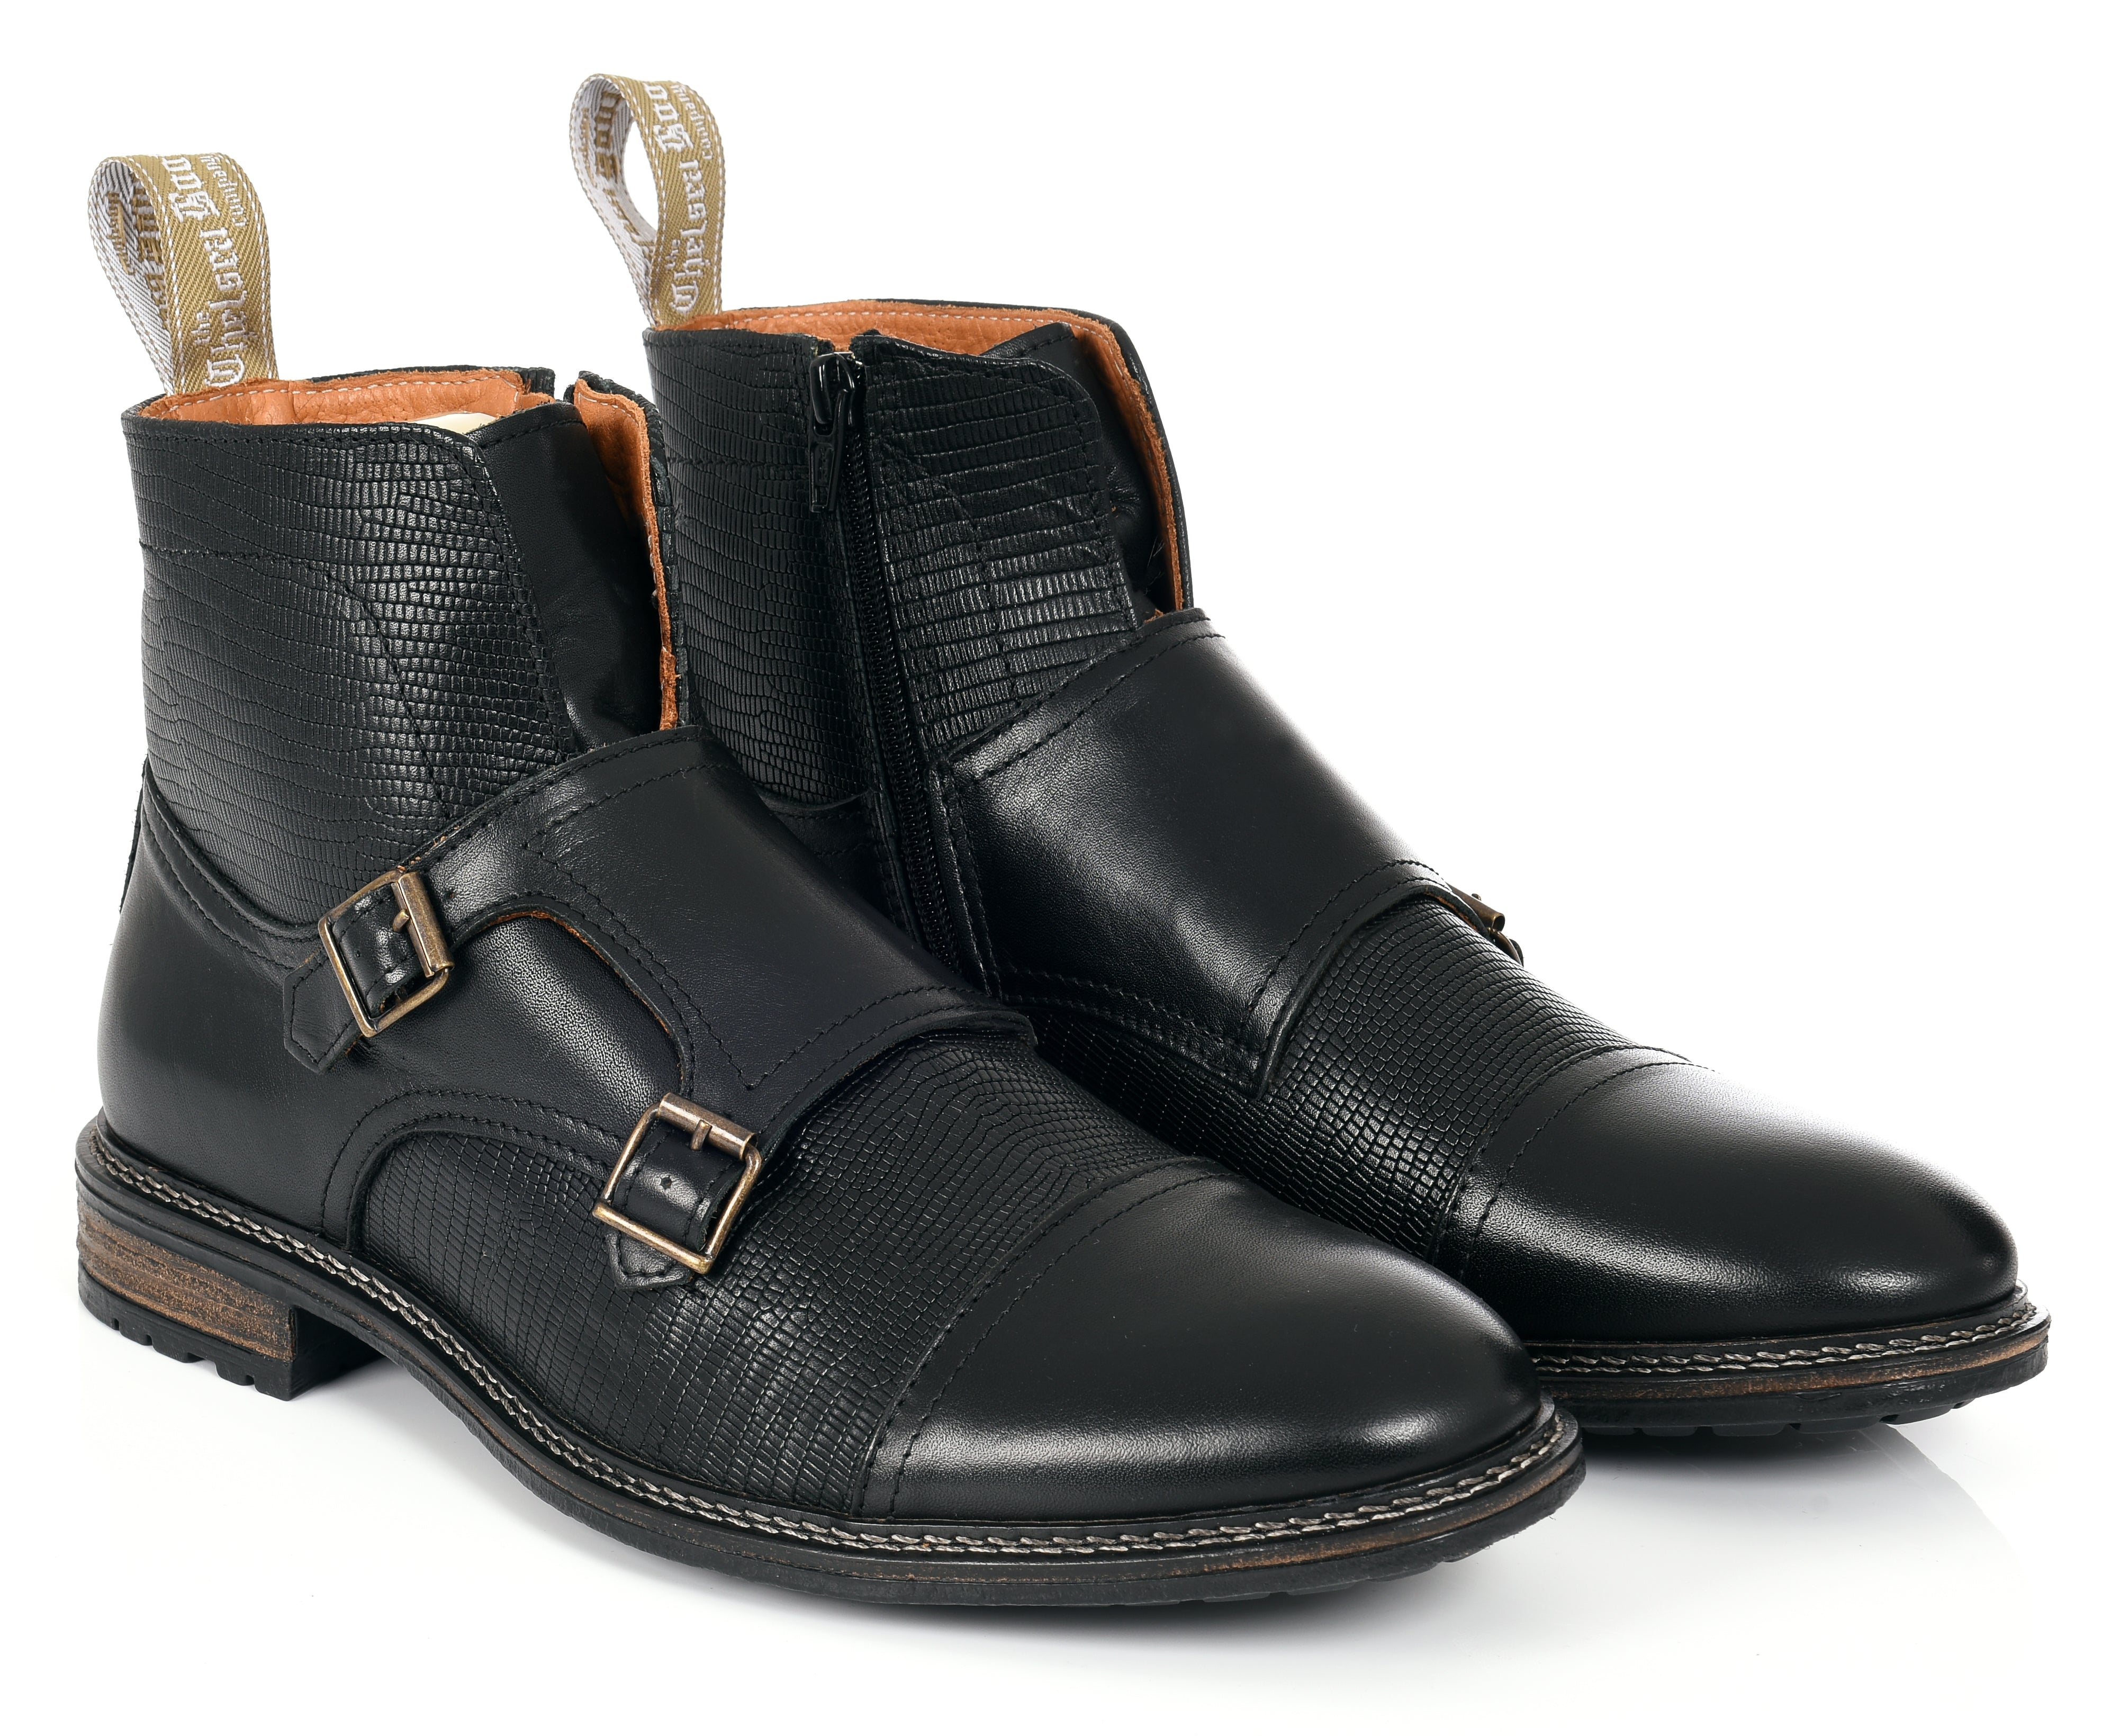 Men’s Double Buckle - Black 7 Uk The Chelsea Boot Co Est. 1851